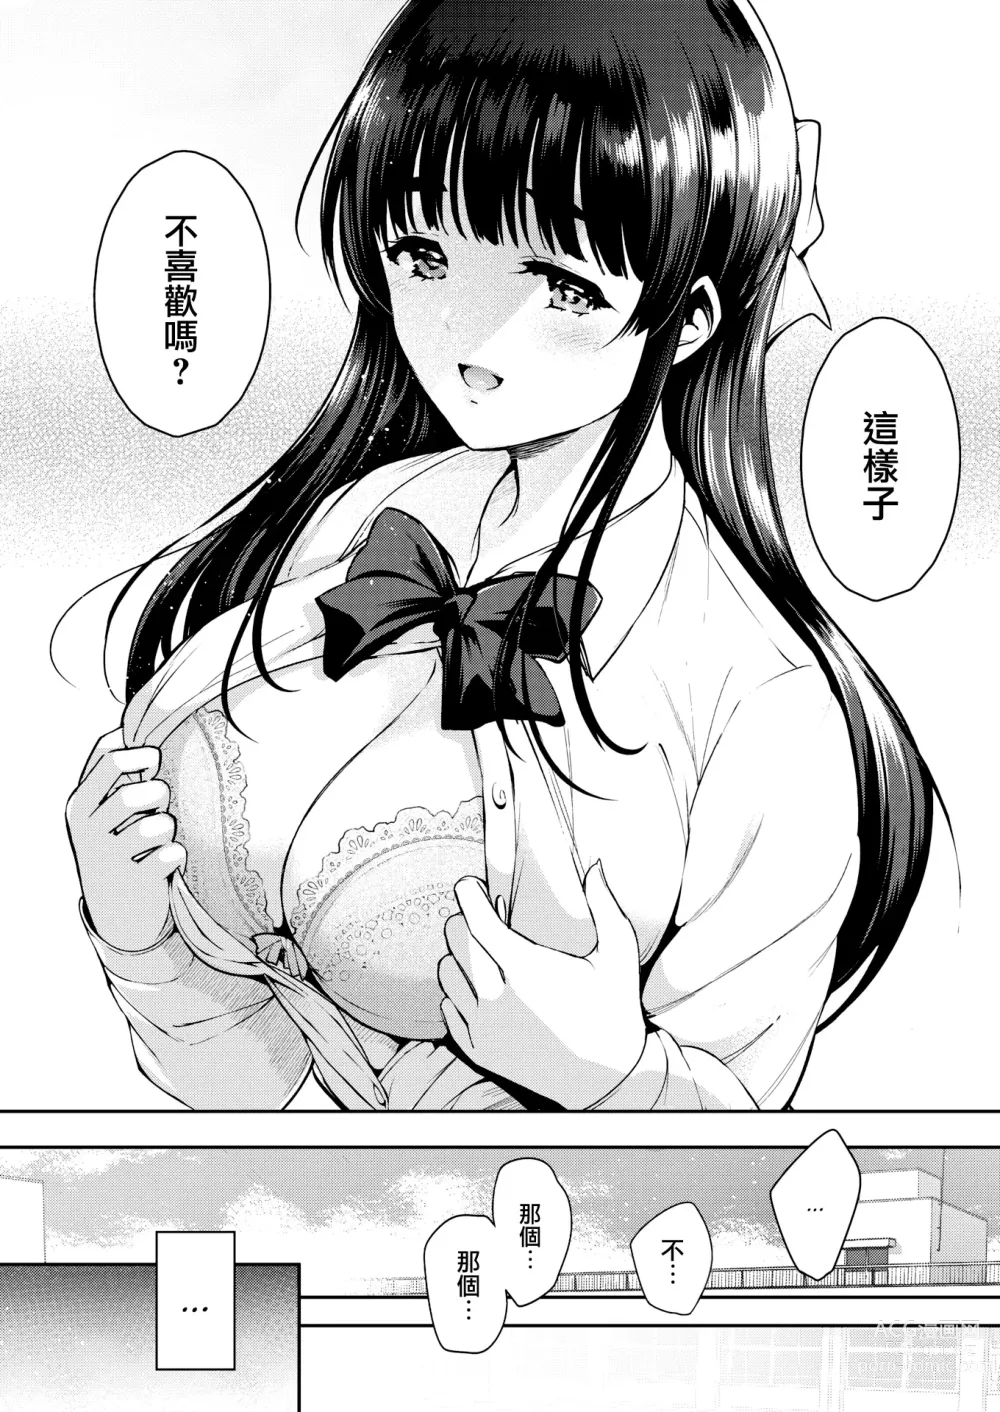 Page 7 of manga Aoi Sora no Mashita de